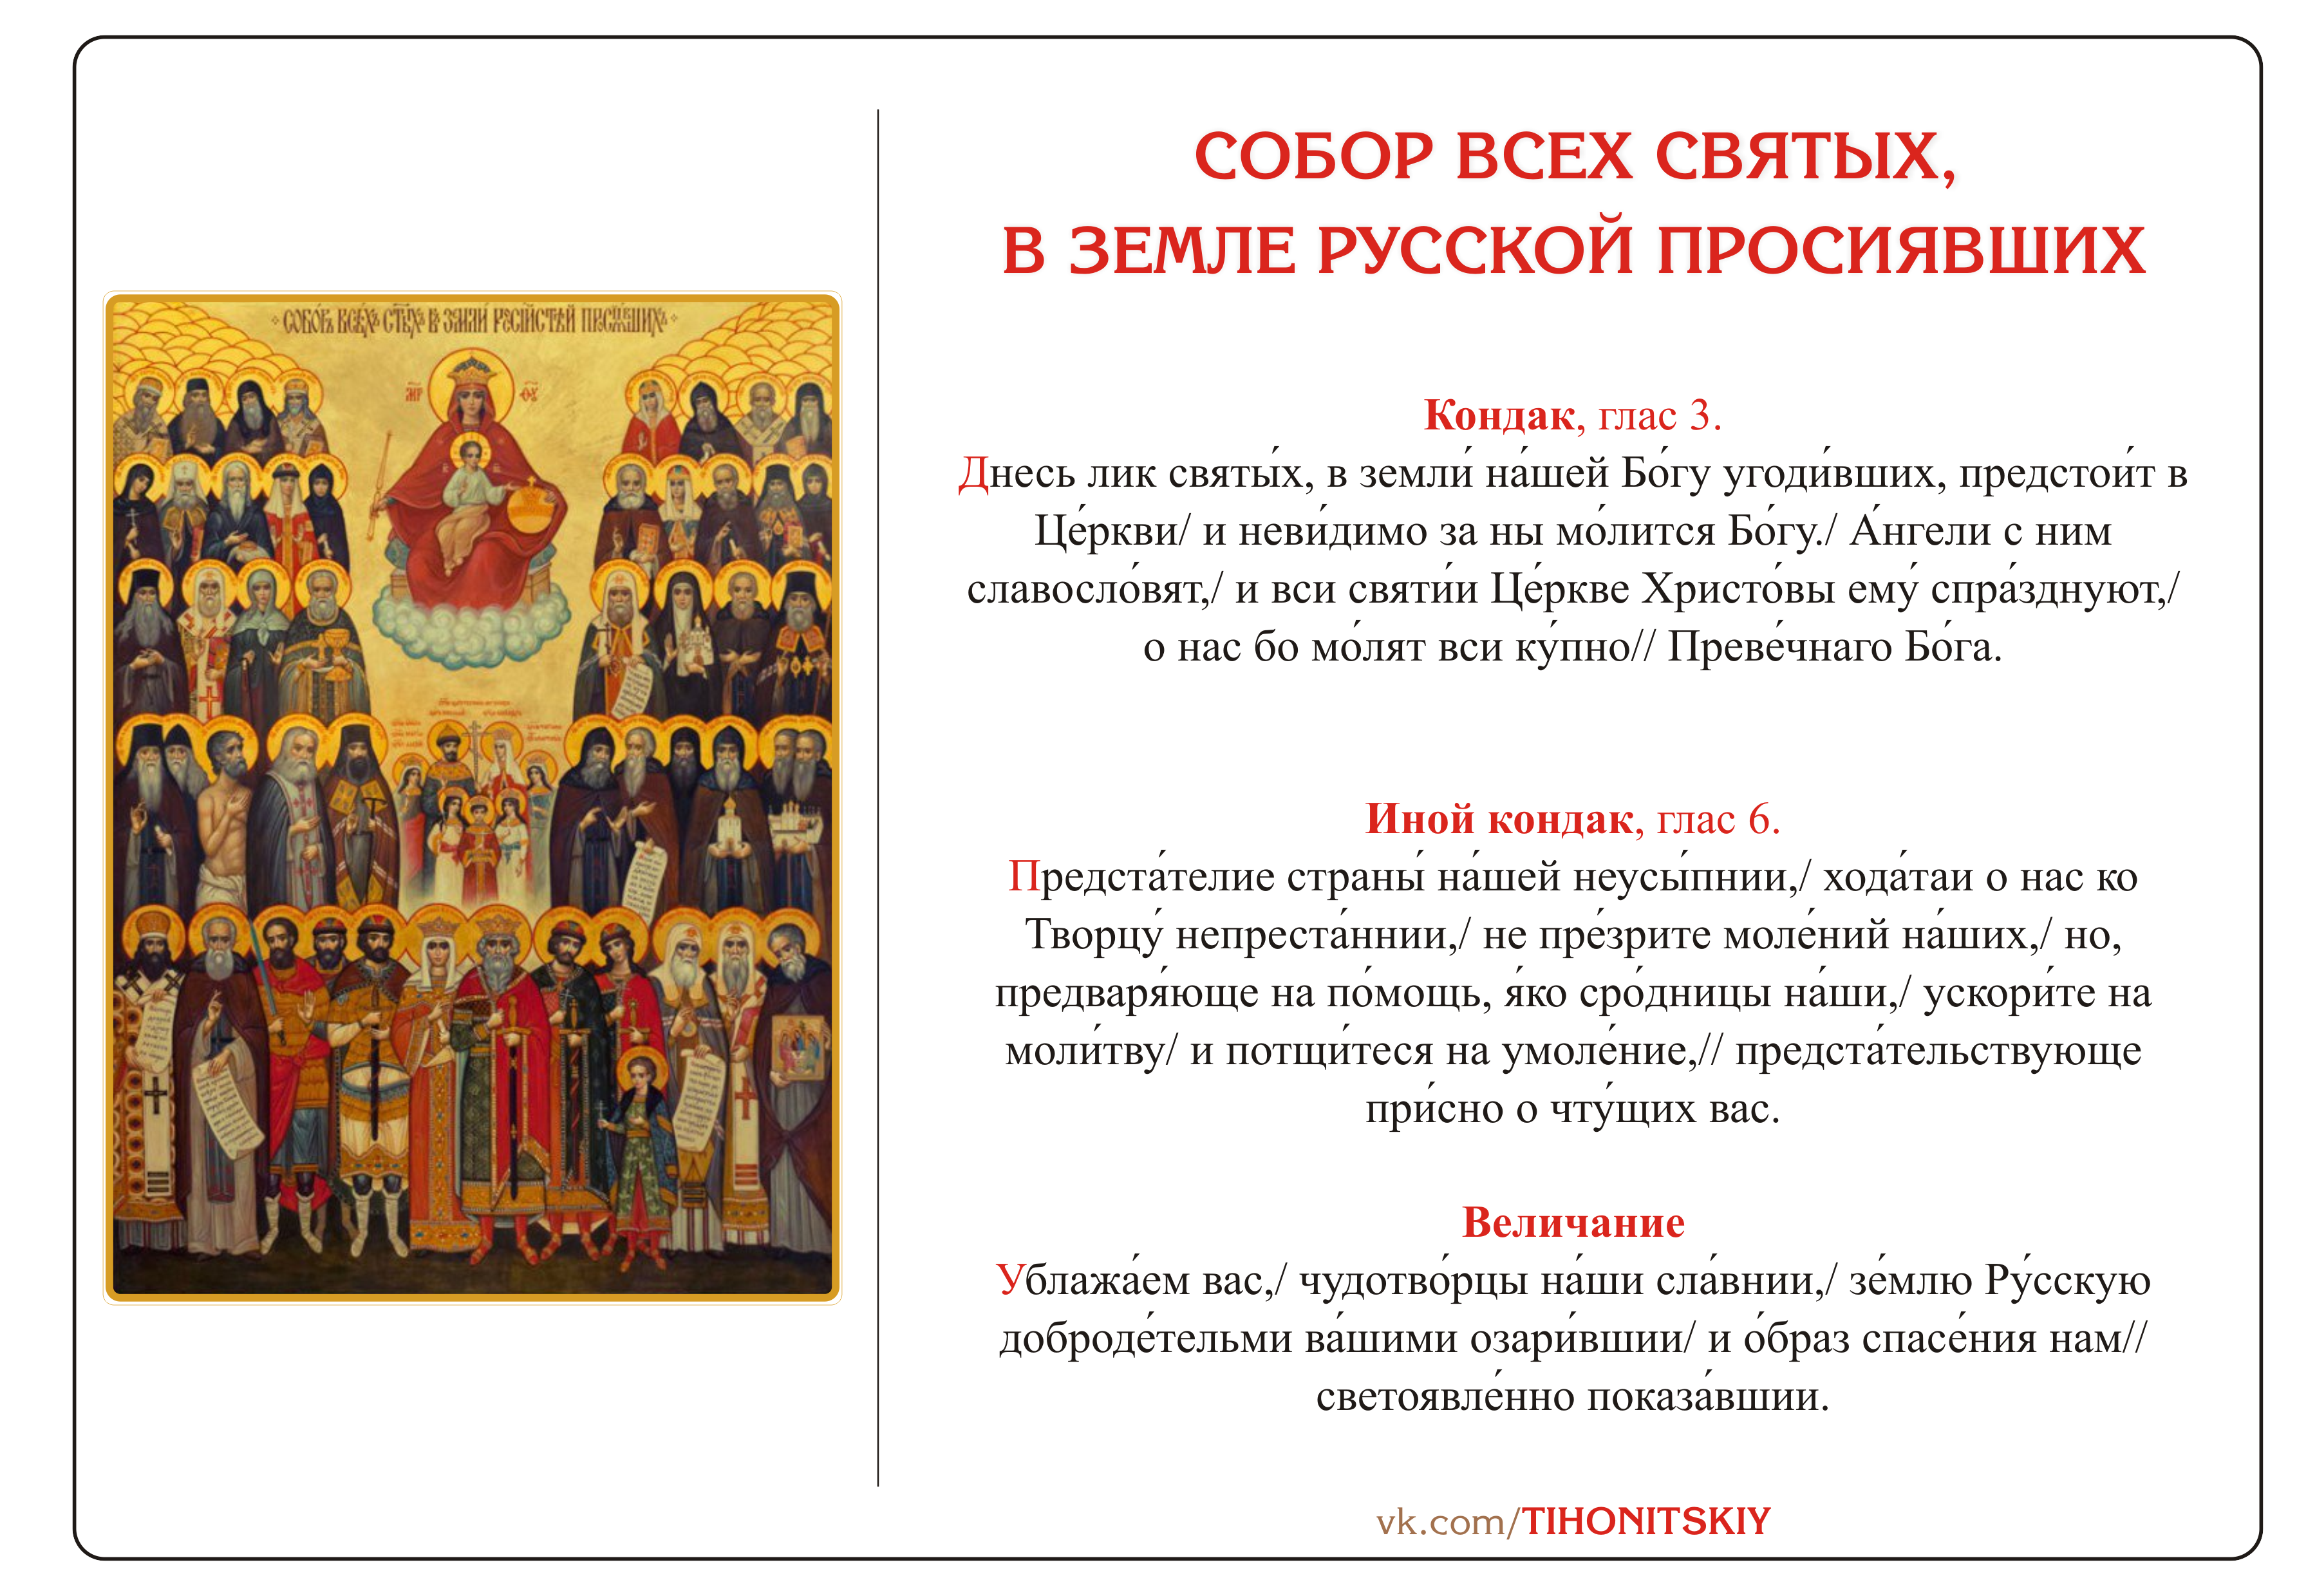 Три русских аналога хэллоуина, или почему мы отмечаем день чужих святых? | культура | аиф новосибирск